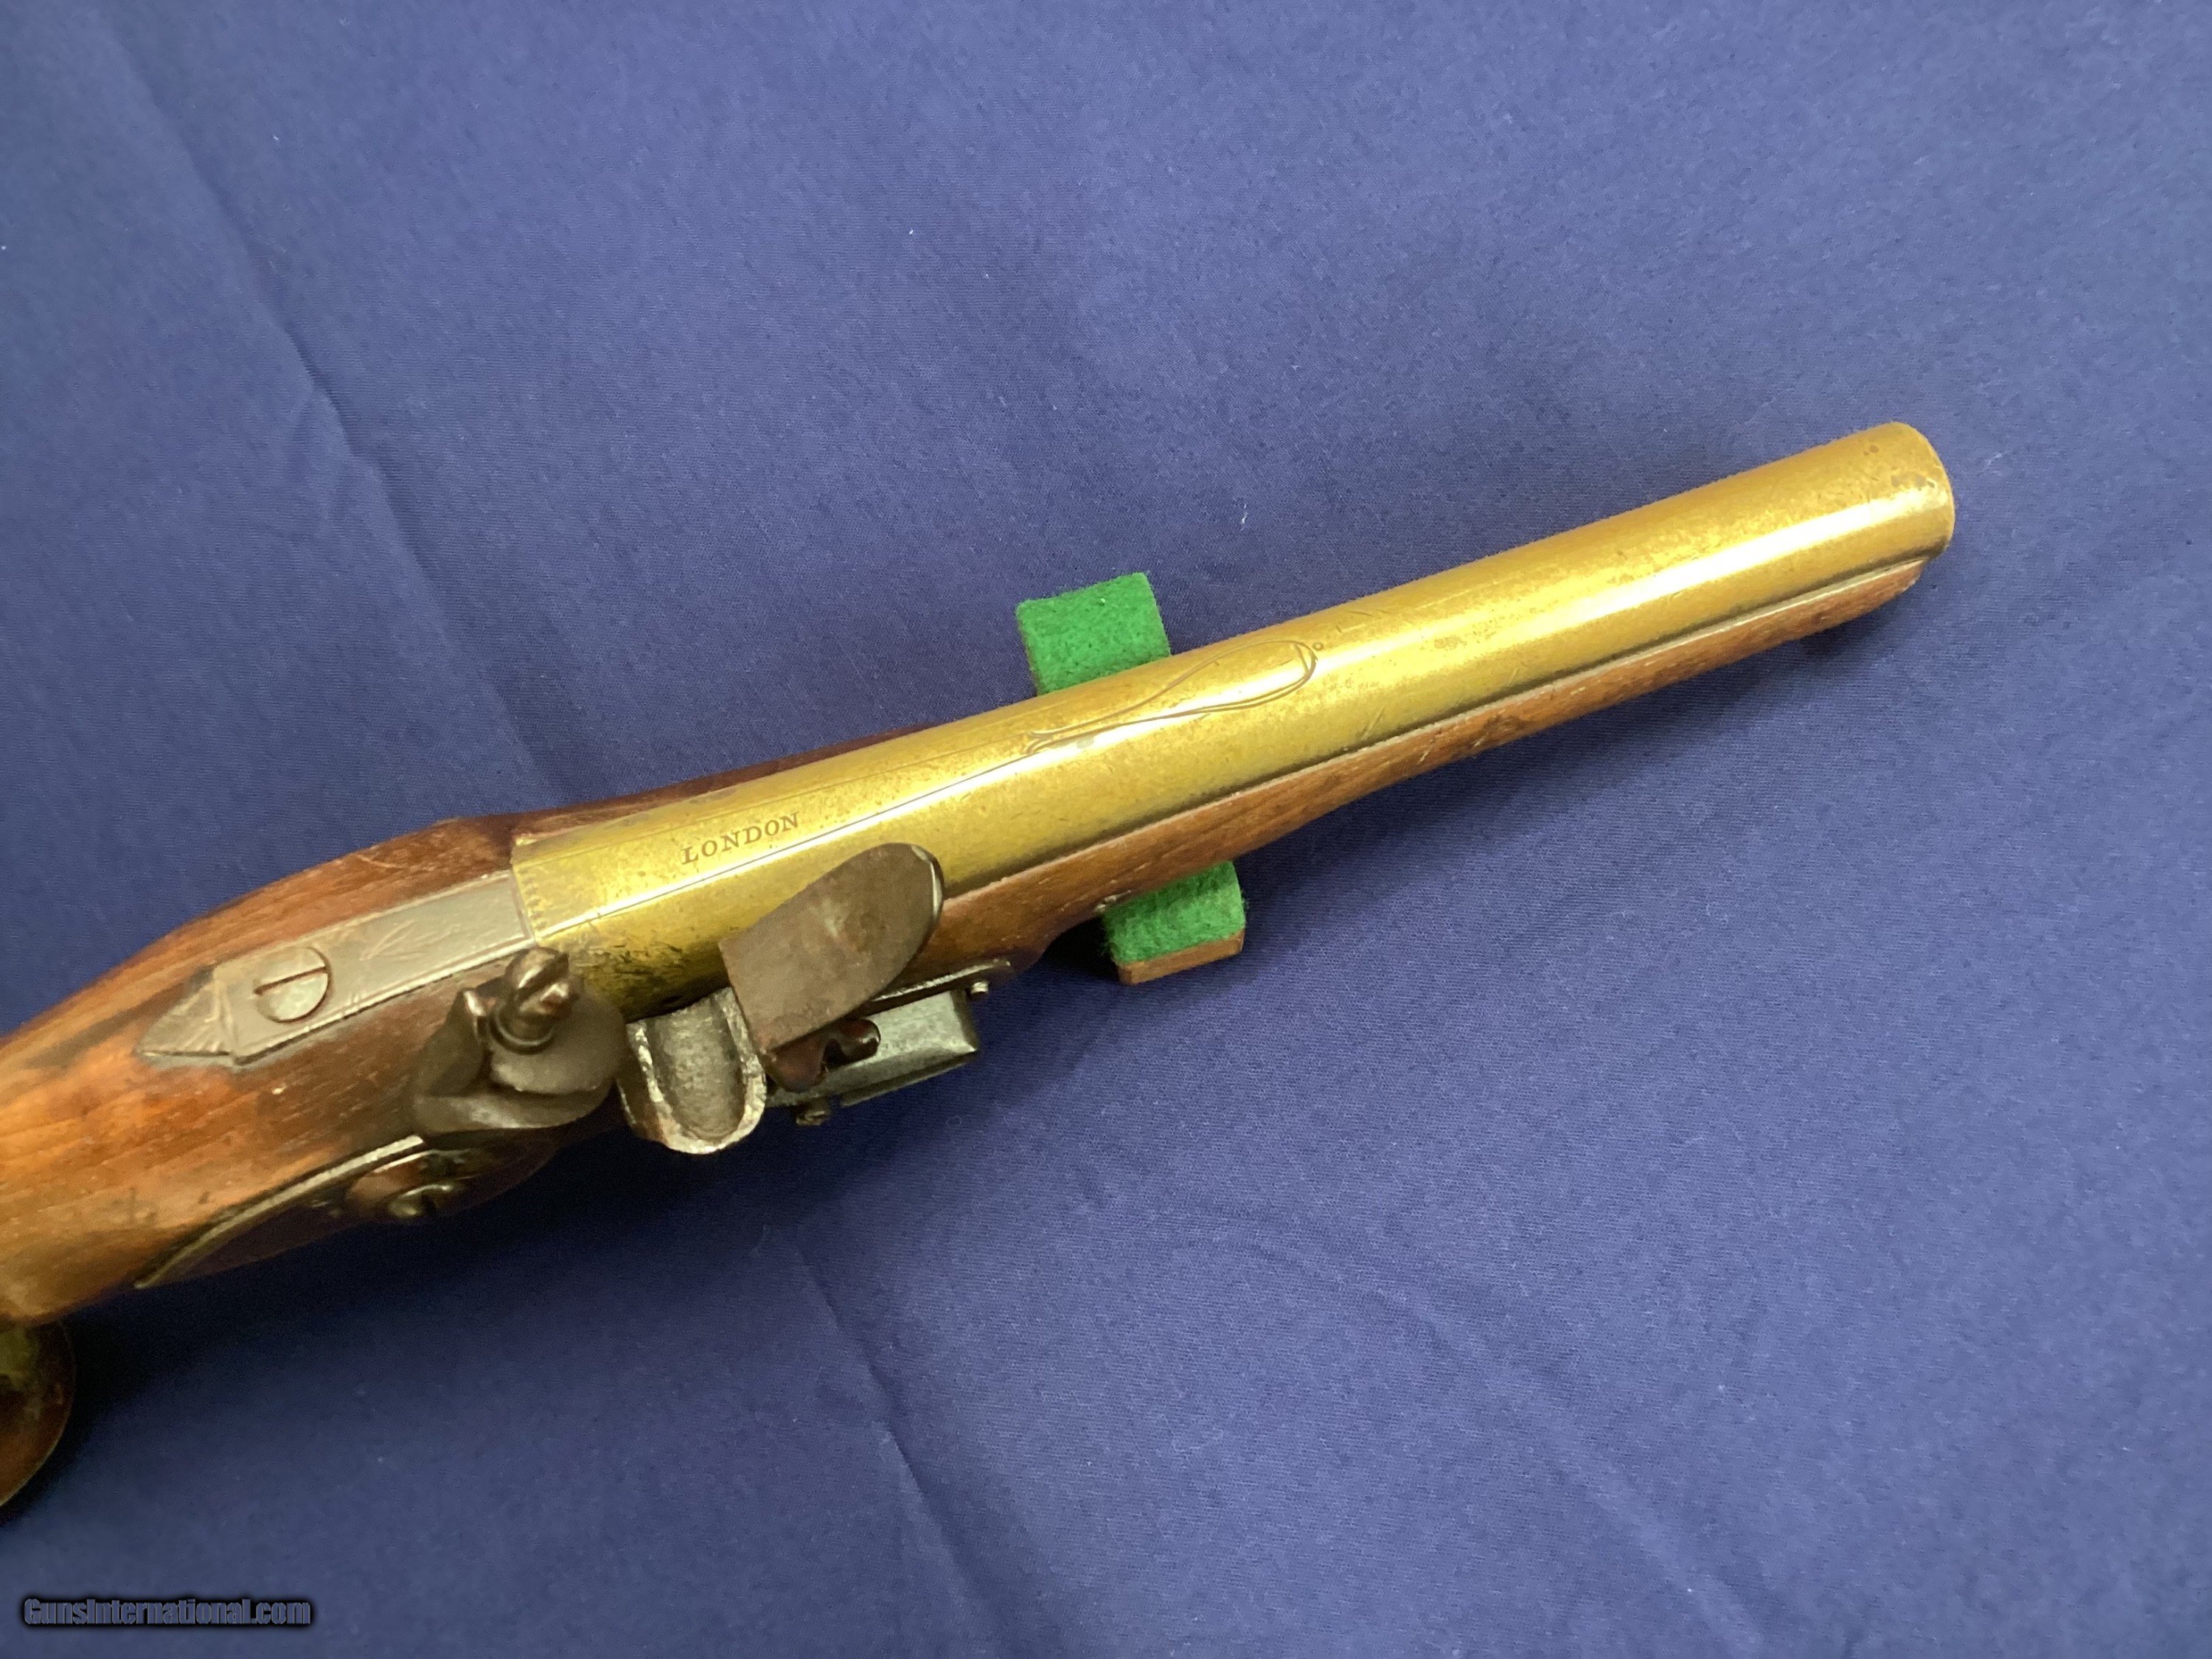 Original British Flintlock Brass Barrel Pistol for the Fur Trade